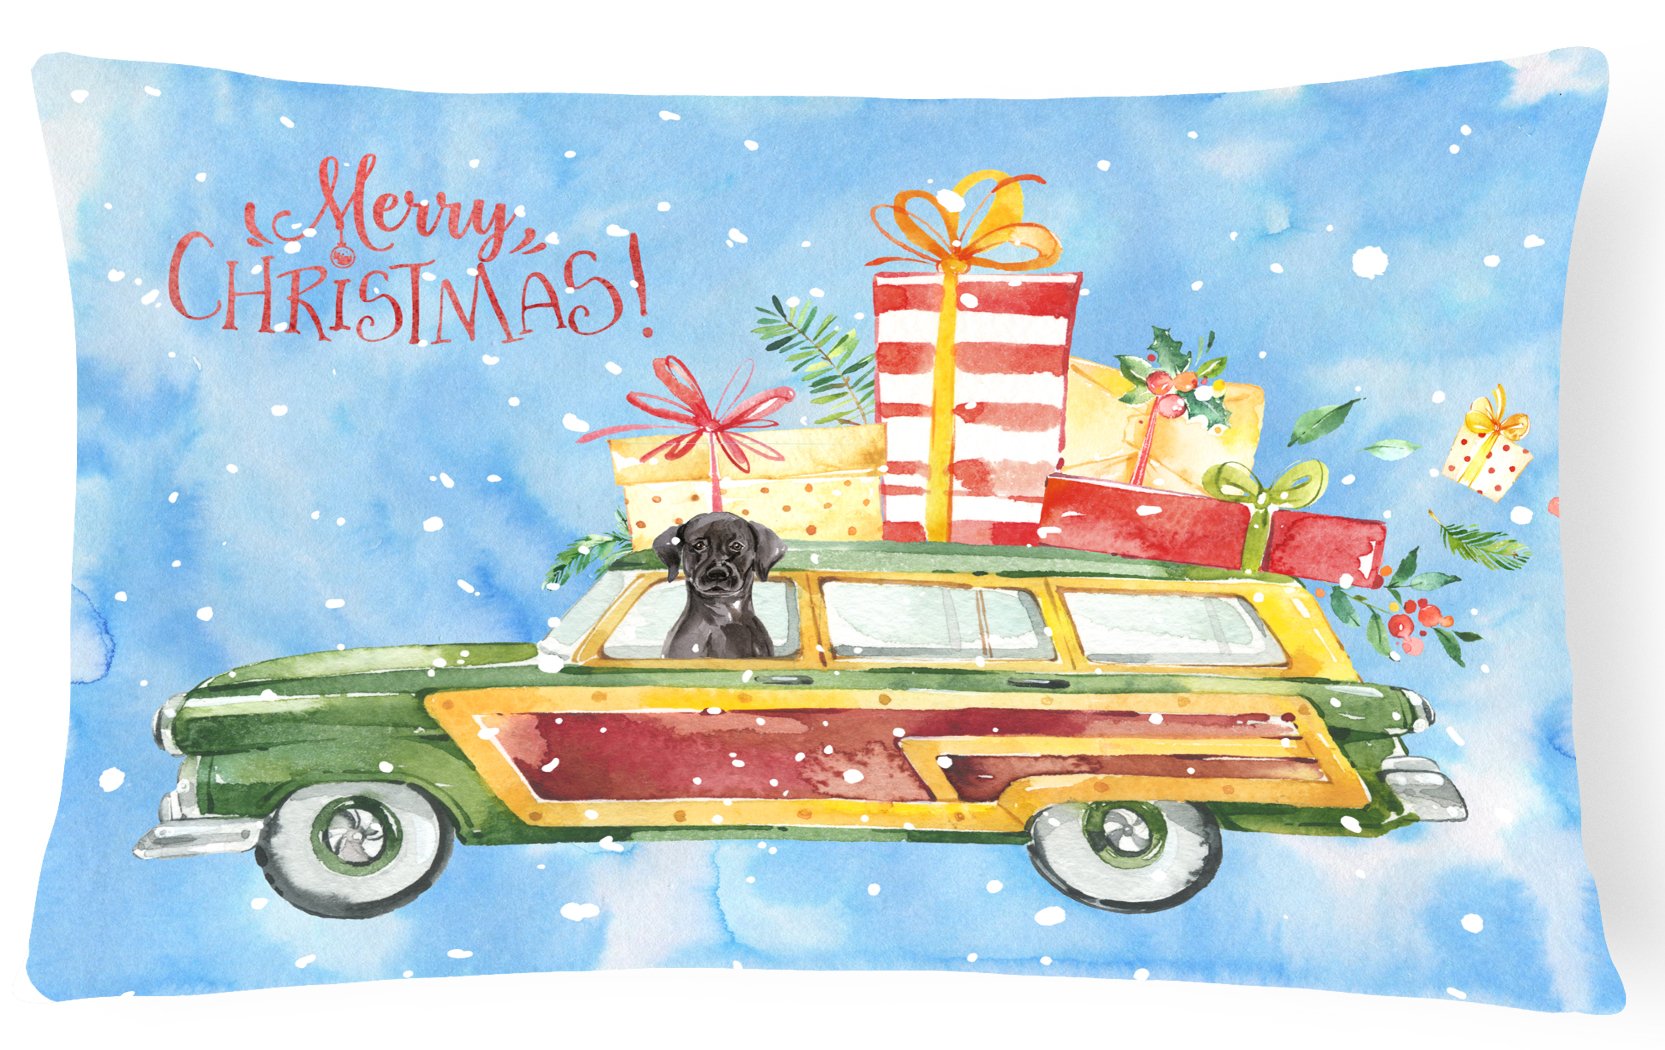 Merry Christmas Black Labrador Retriever Canvas Fabric Decorative Pillow CK2435PW1216 by Caroline's Treasures